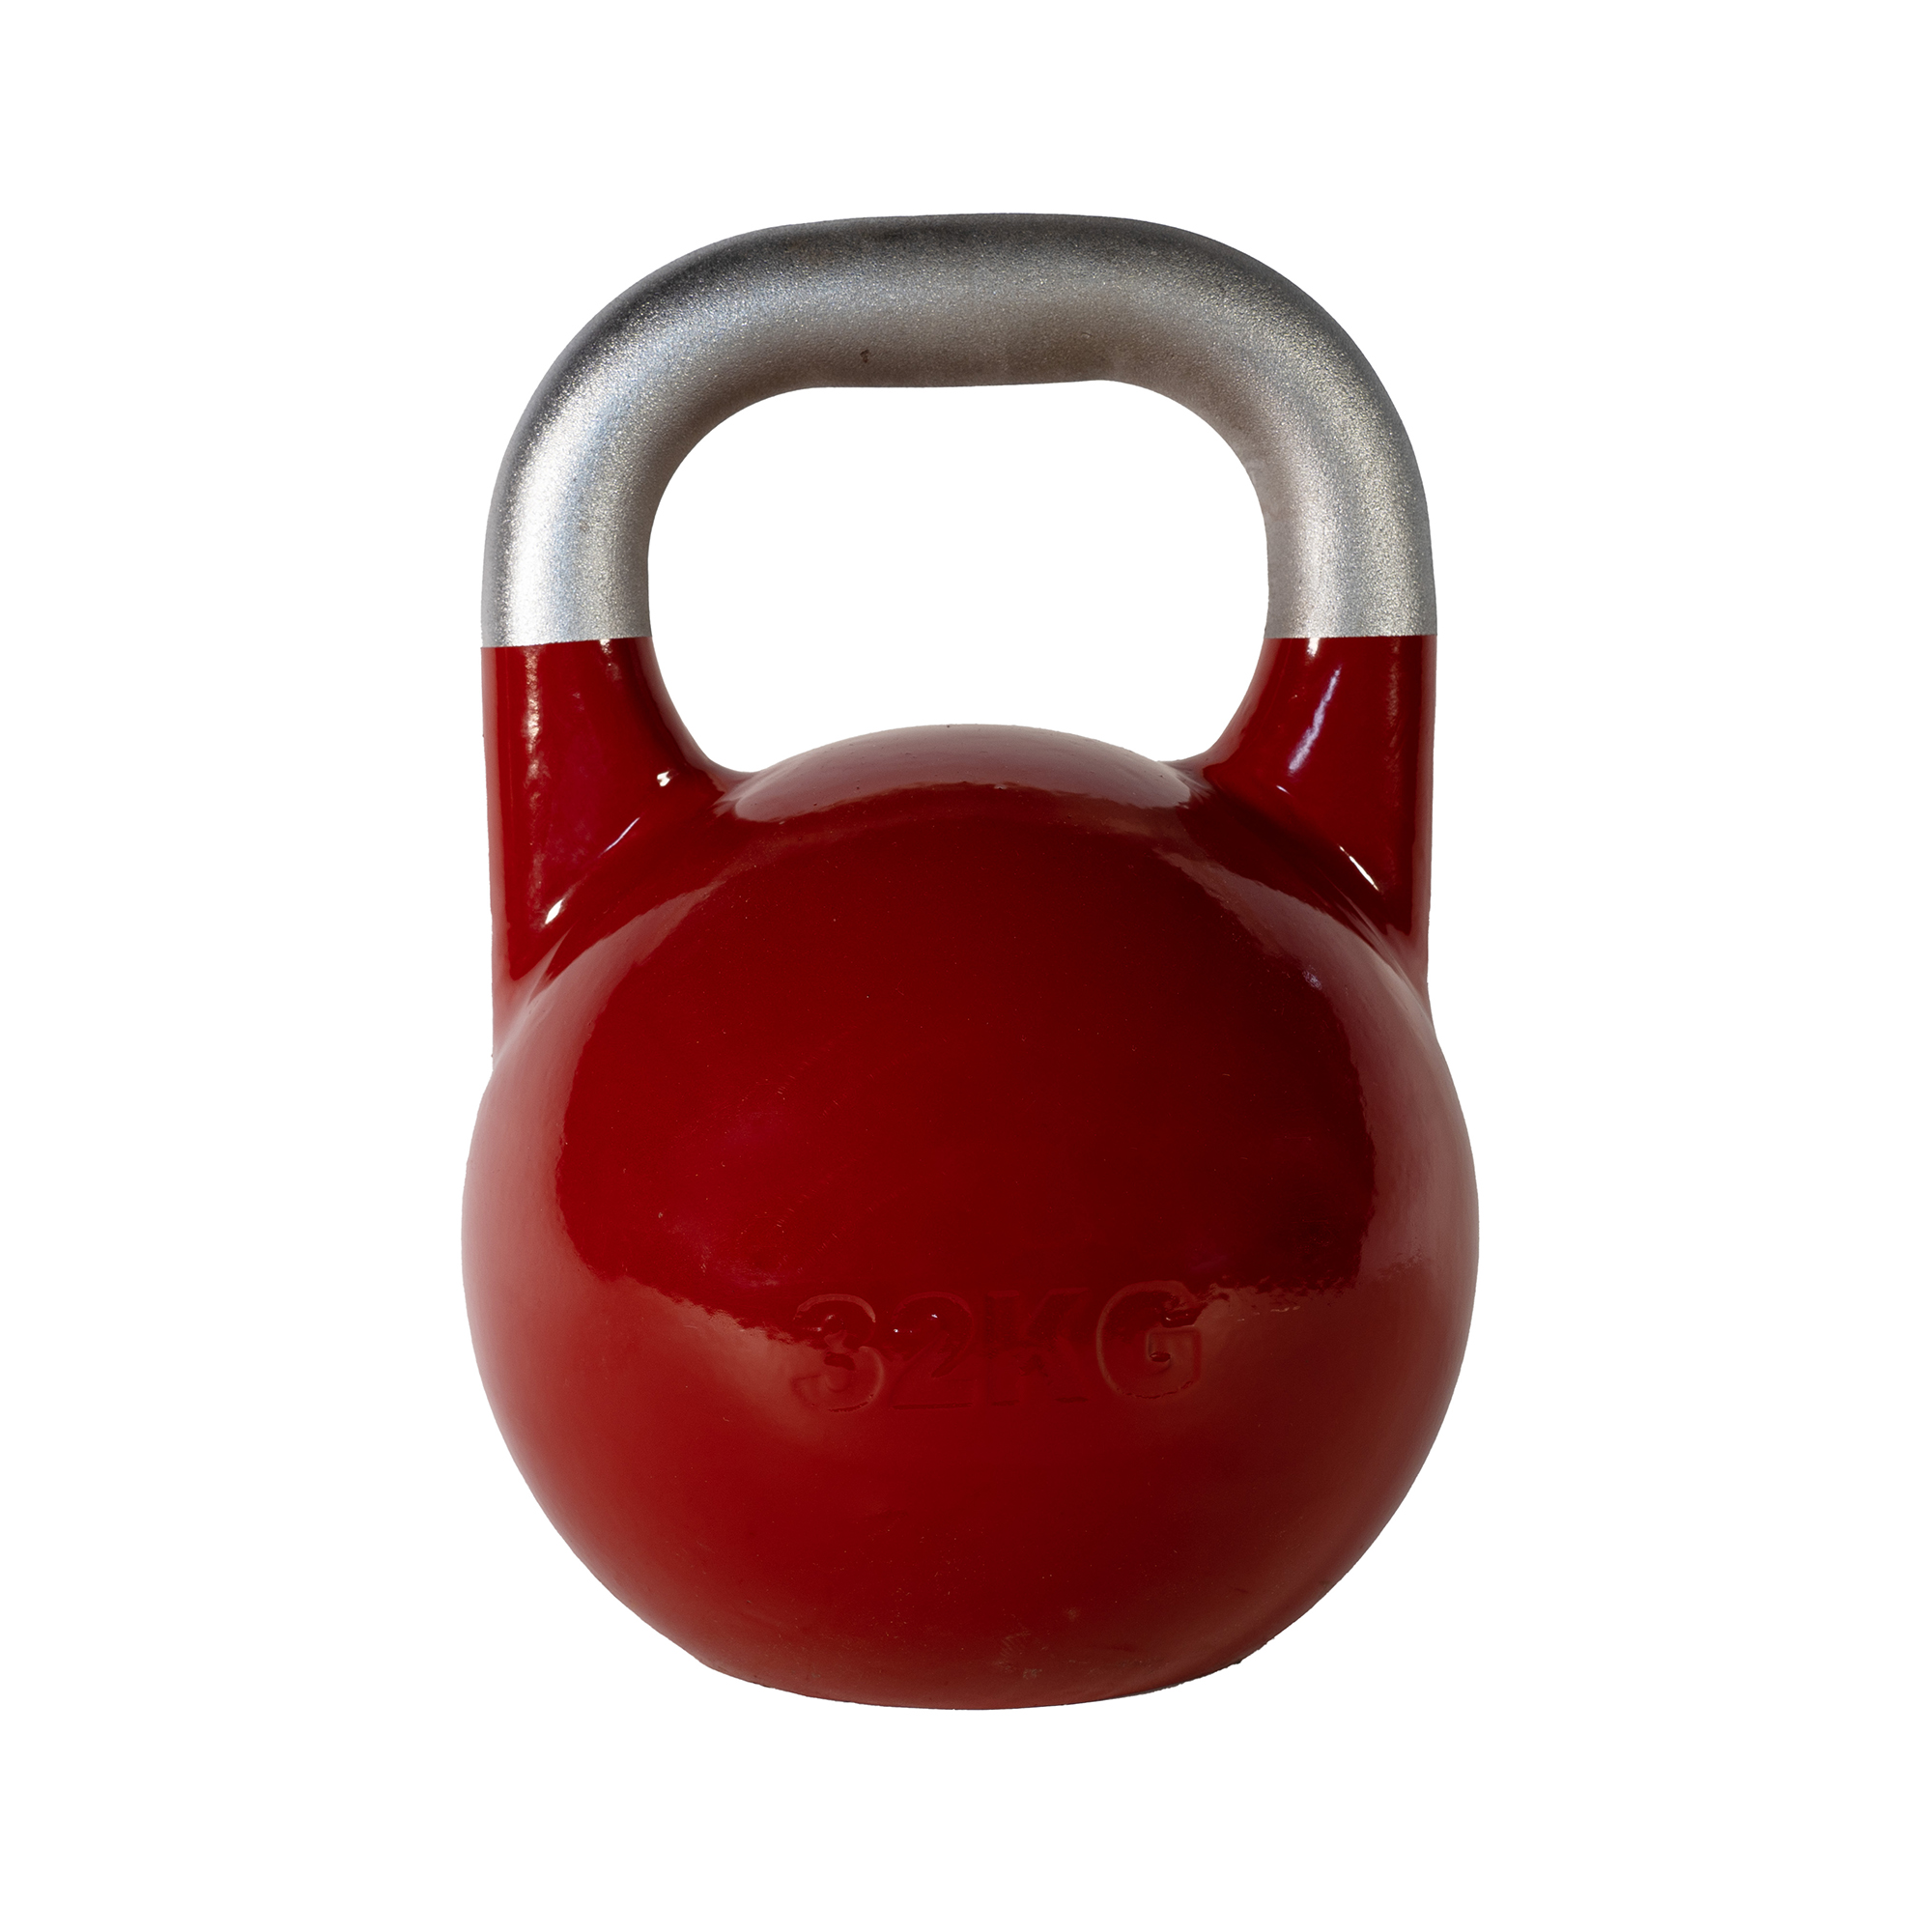 SQ&amp;SN Competition Kettlebell (32 kg) i støbejern. Udstyr til crossfit træning, styrketræning og funktionel træning